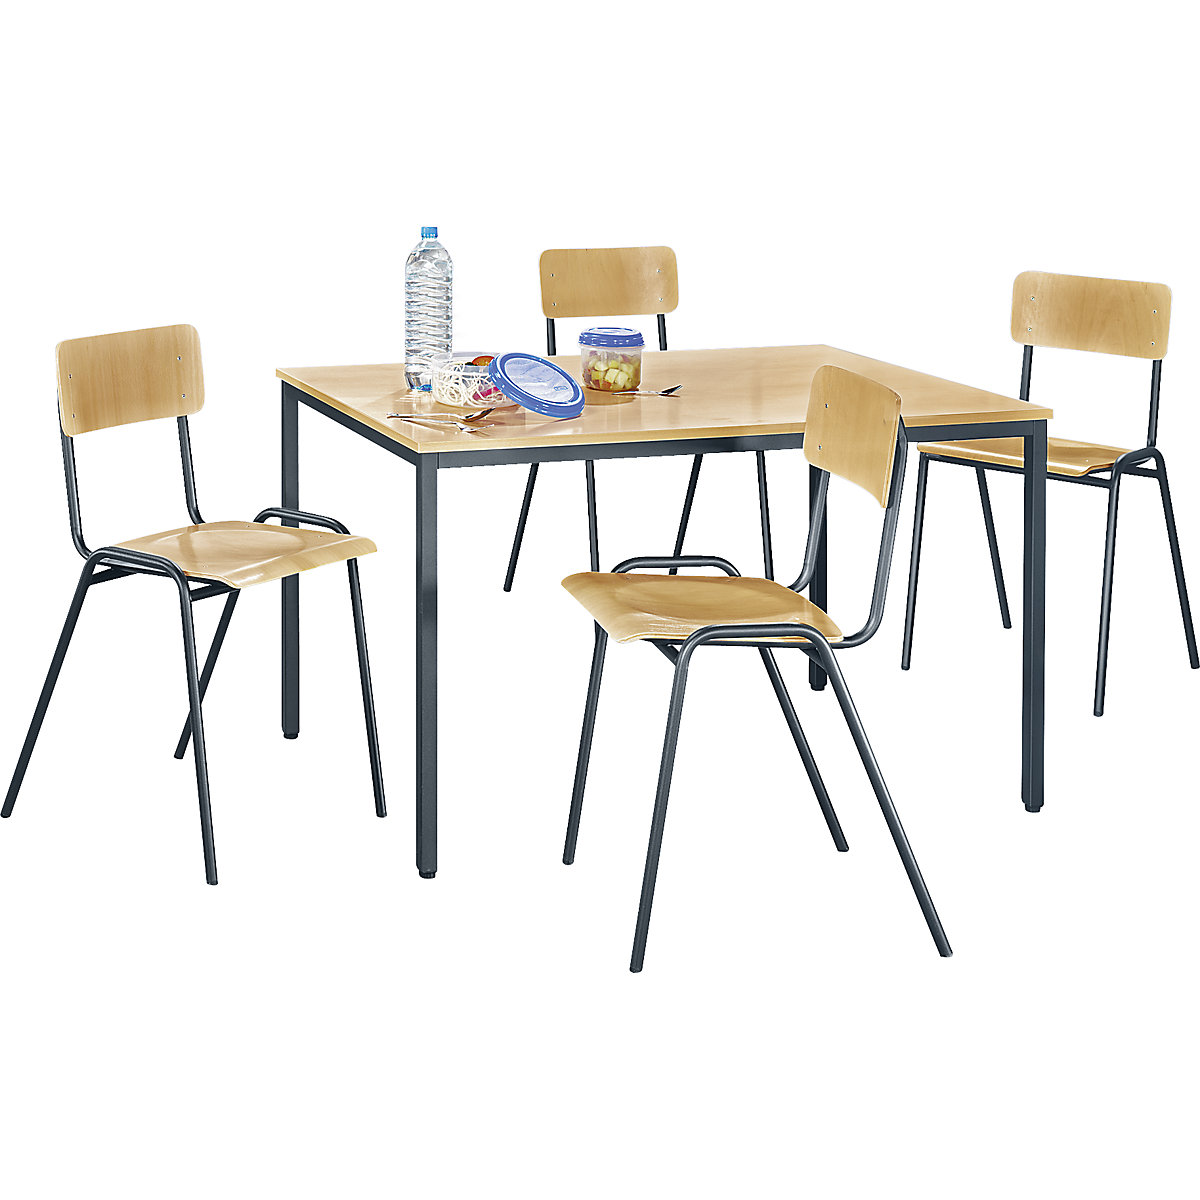 Conjunto de sillas y mesa multiusos – eurokraft basic, 1 mesa, 4 sillas, tablero de mesa en decoración de haya, armazón gris basalto-8